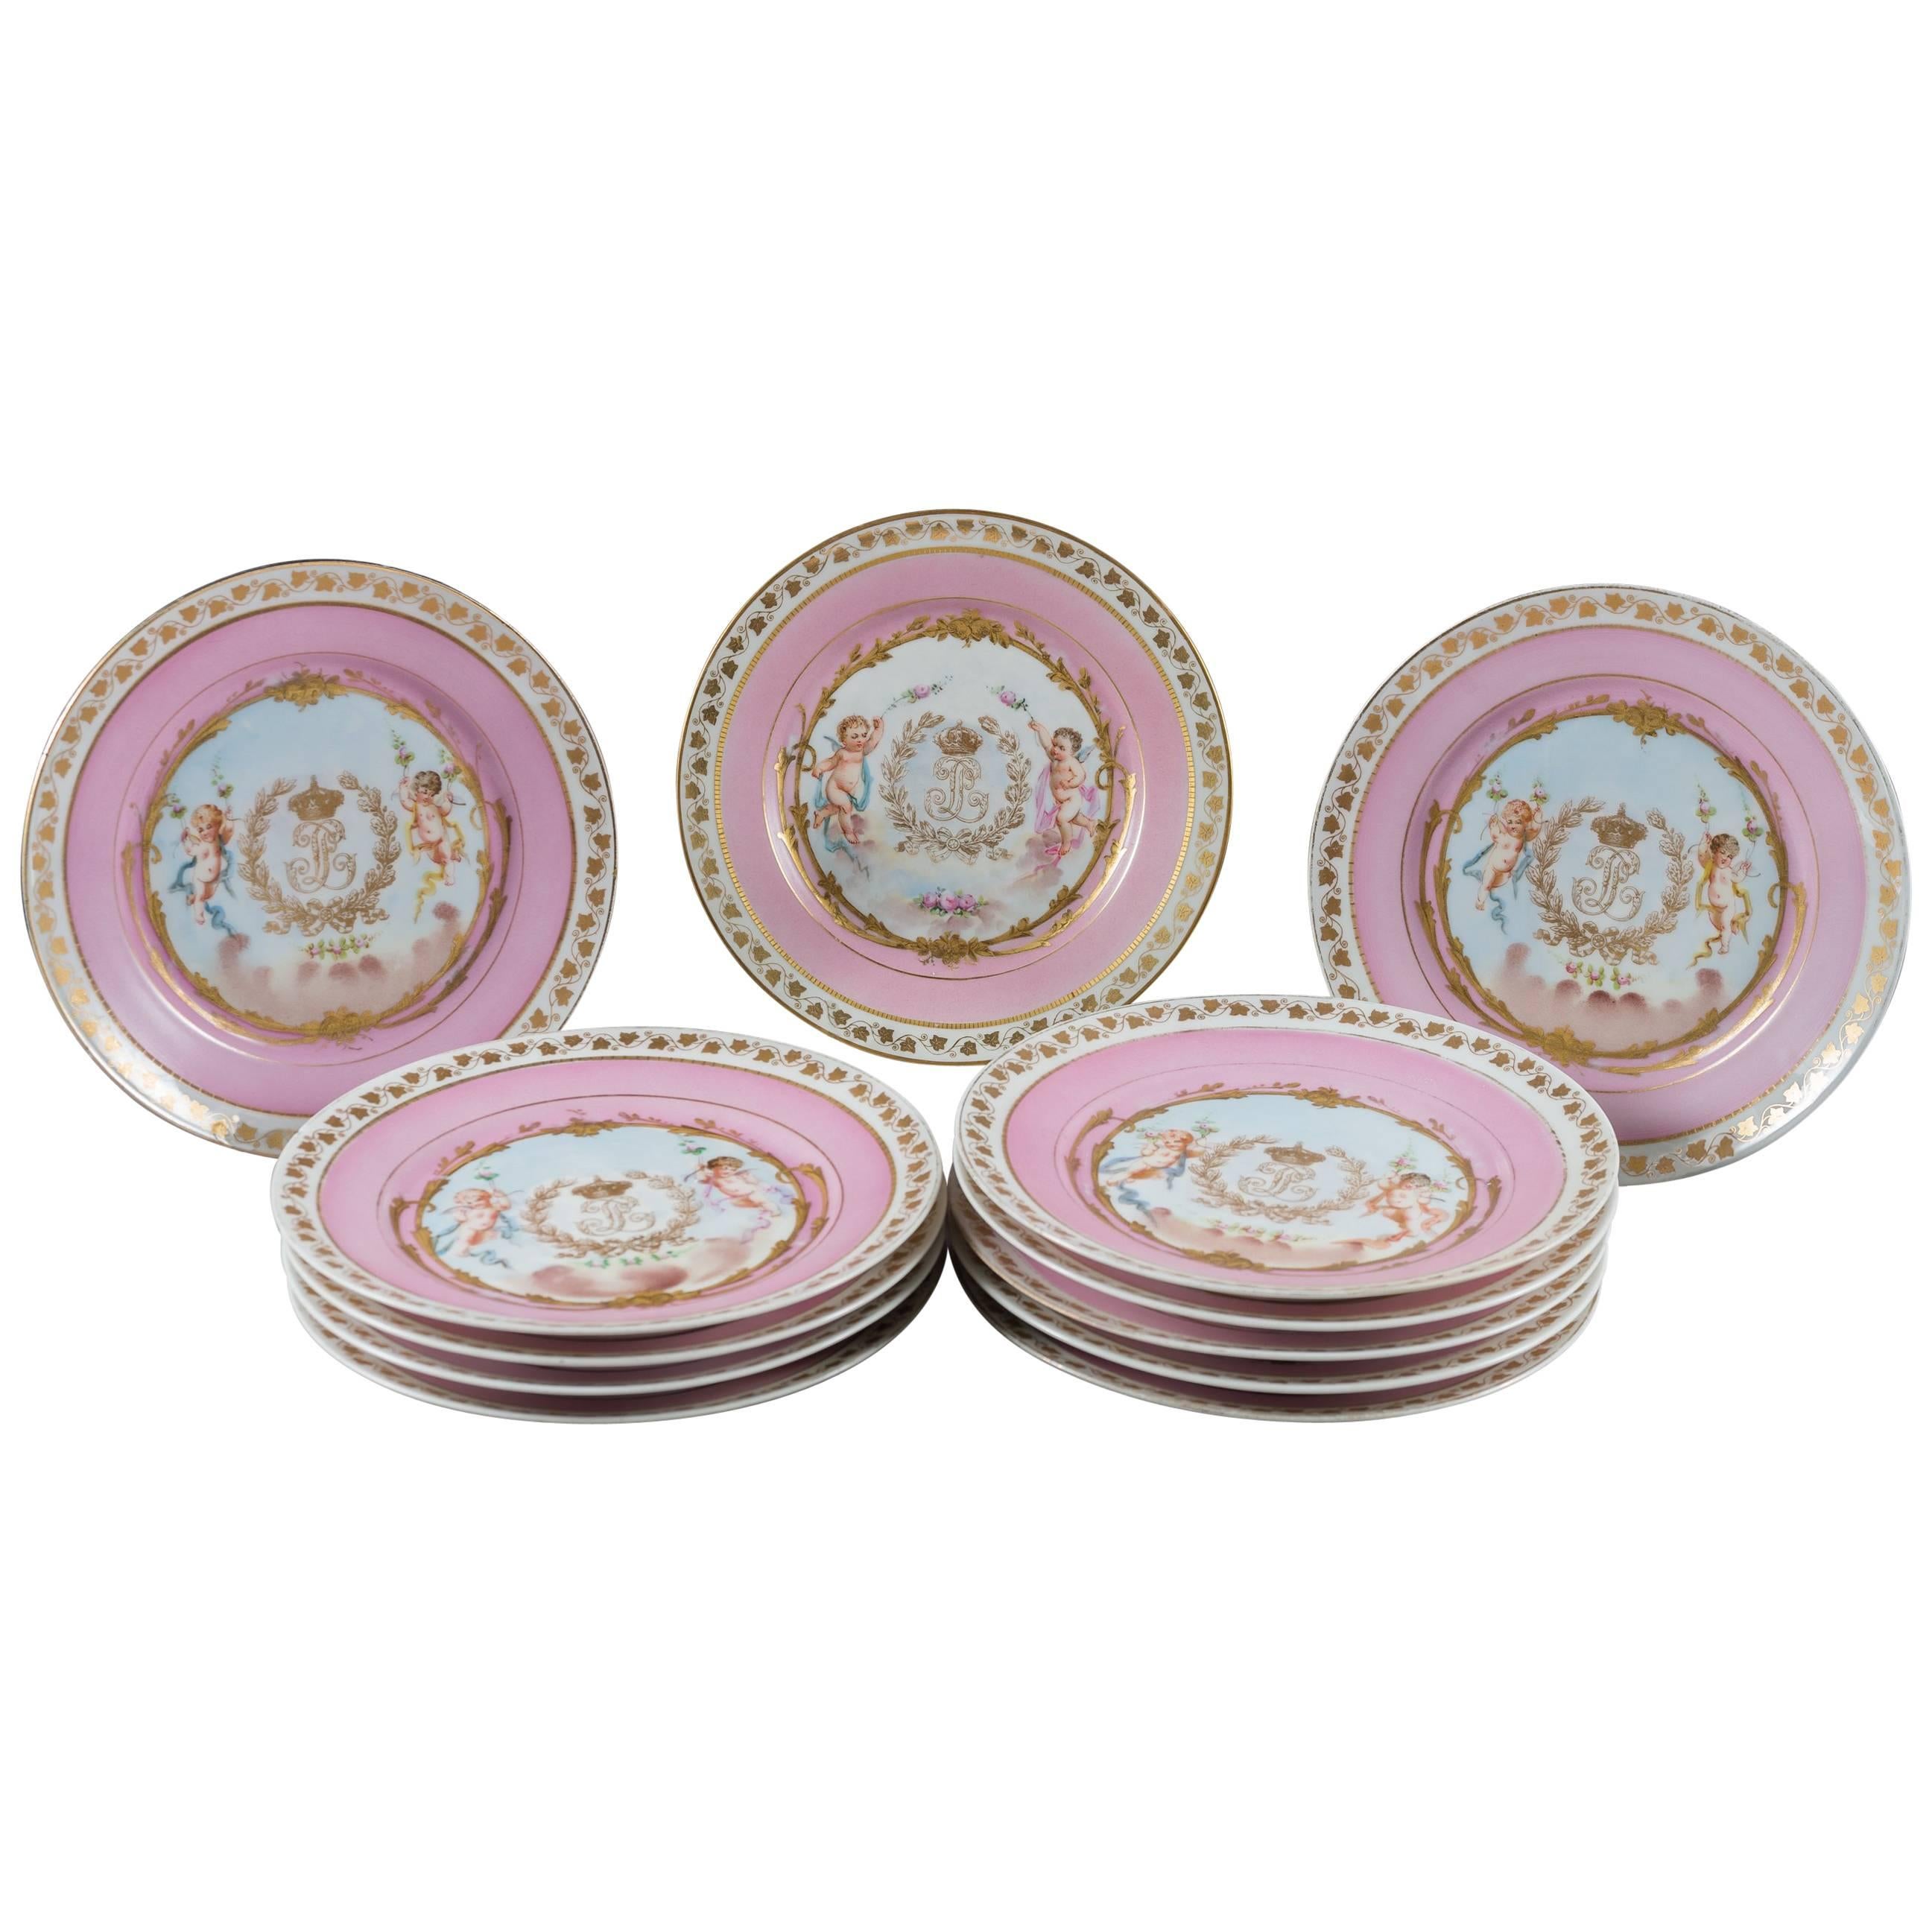 Lot de 12 assiettes en porcelaine de Sèvres peintes en rose